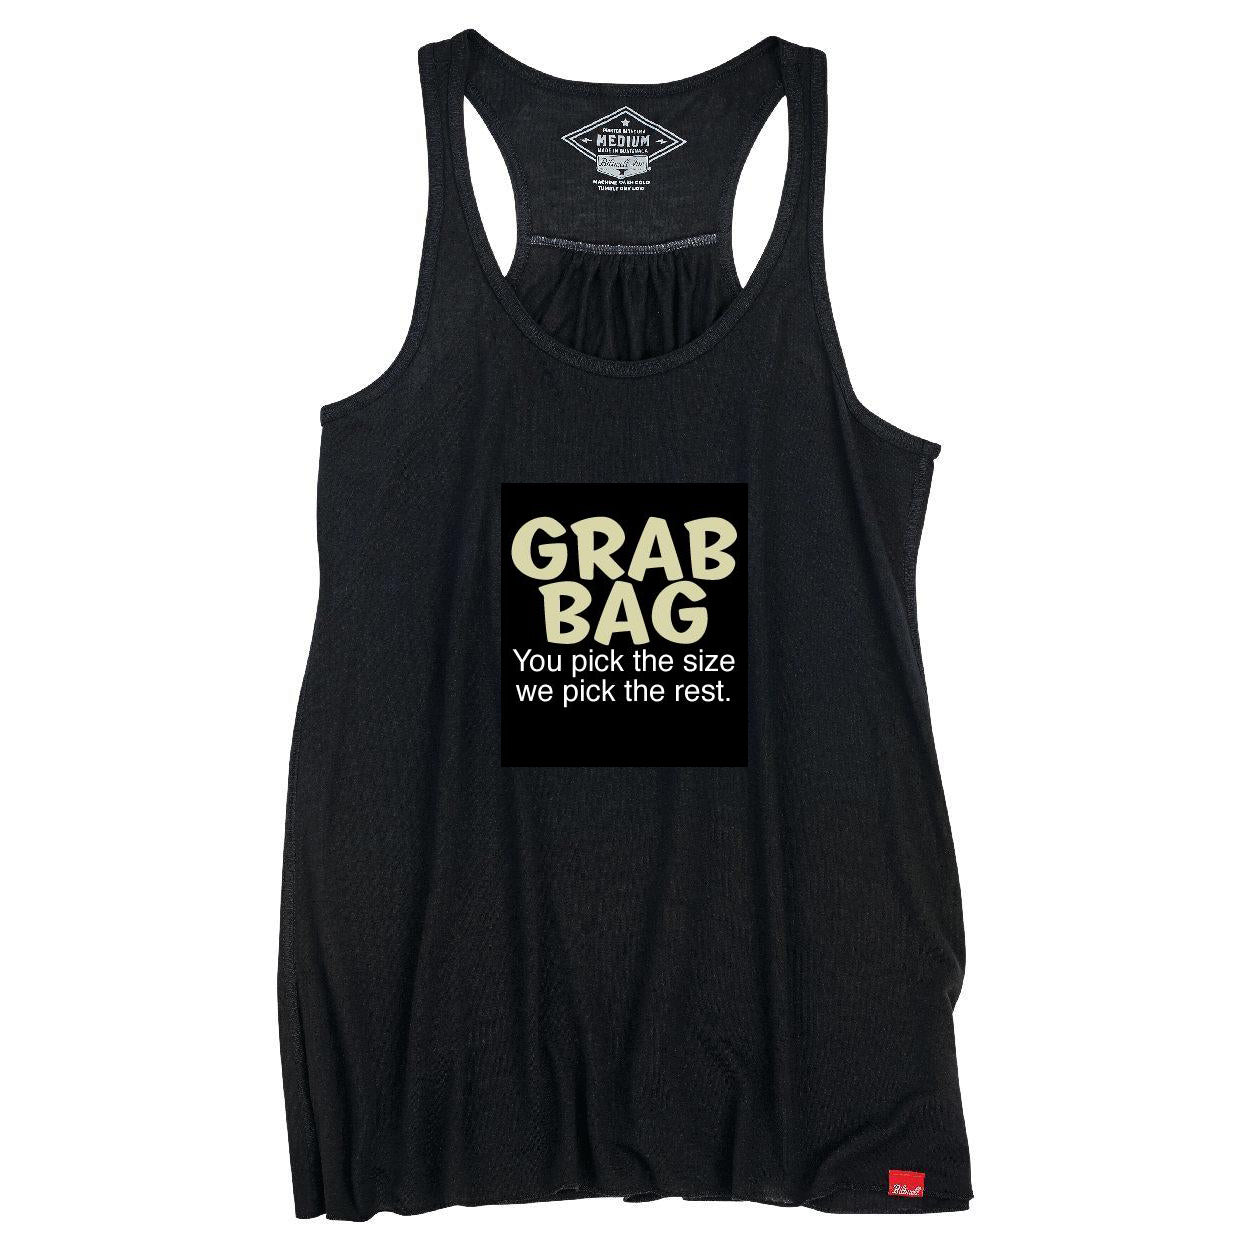 Grab Bag Women's Top